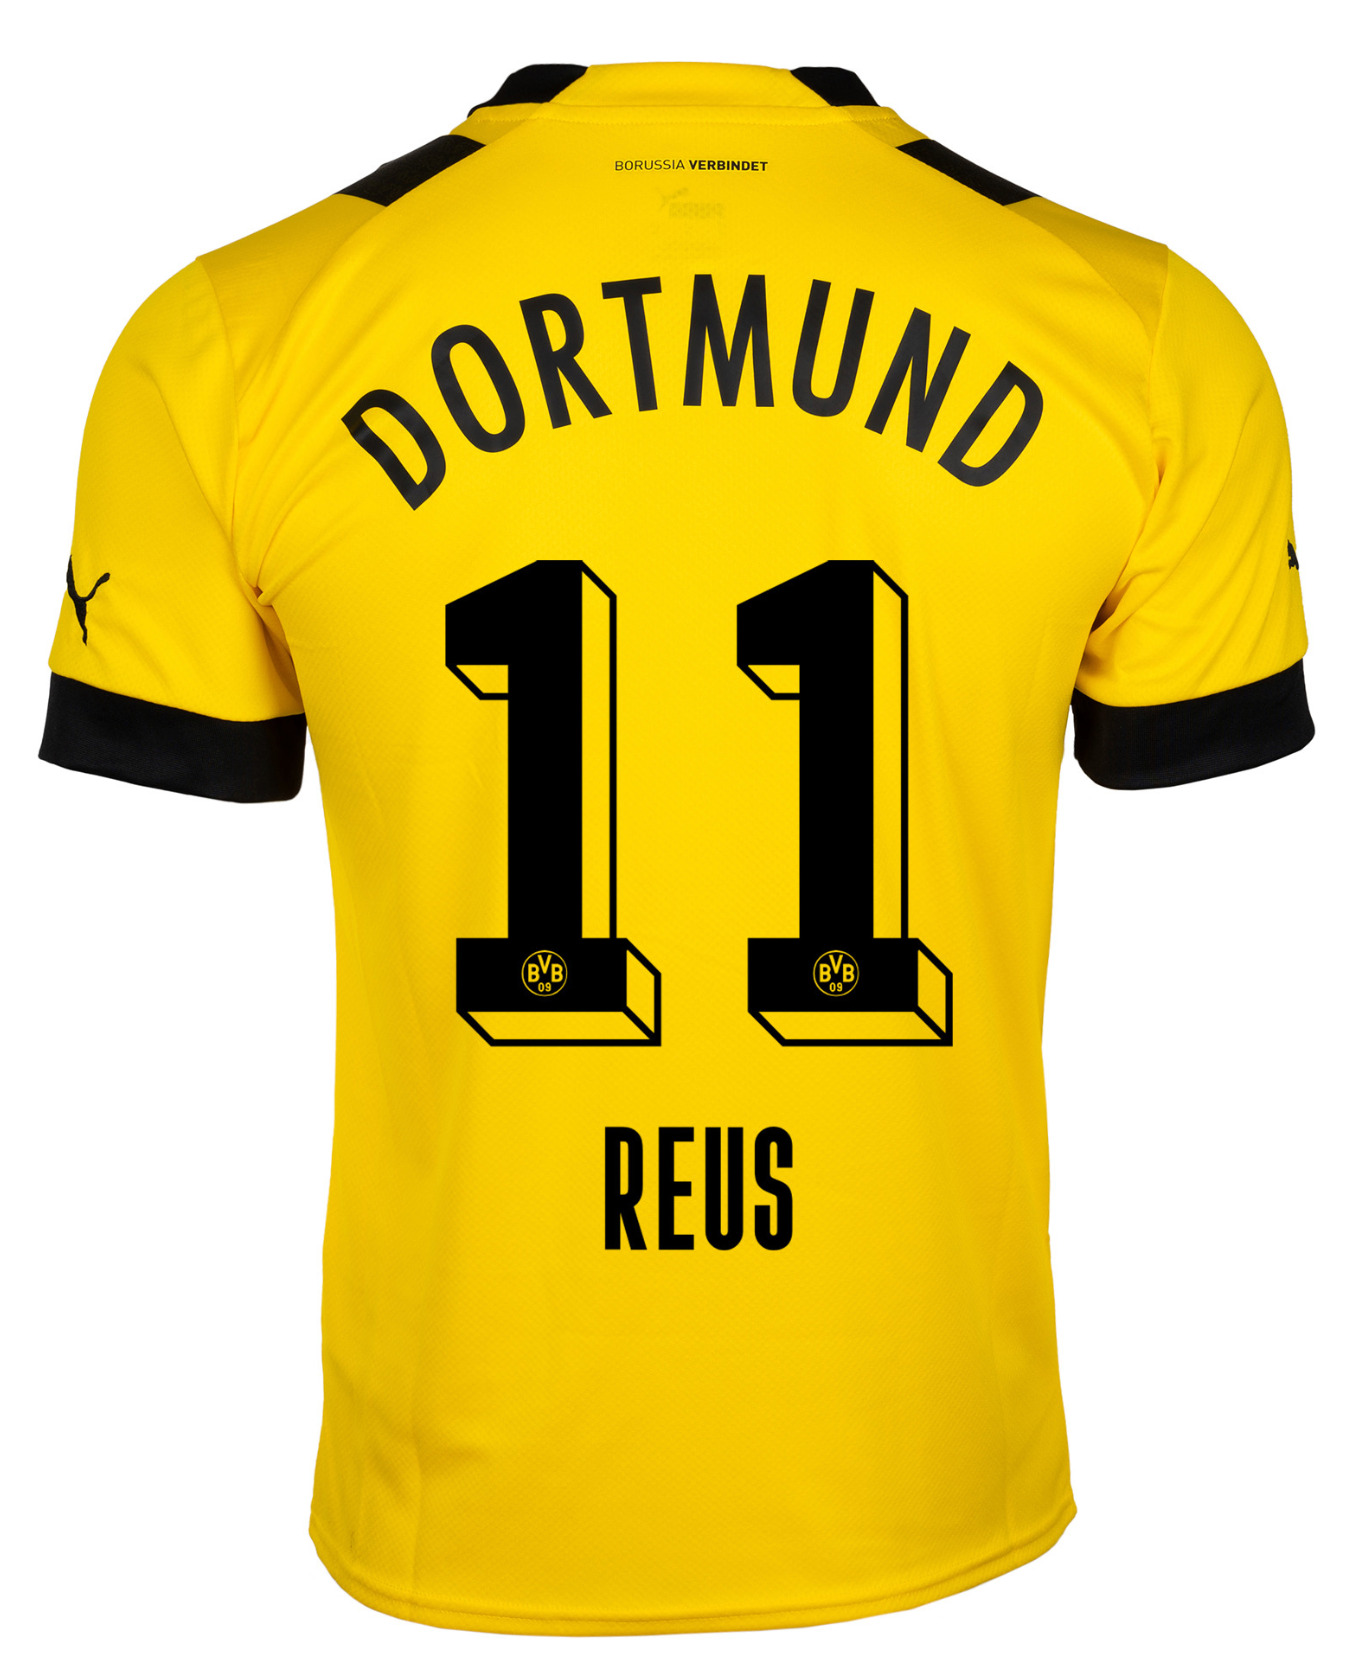 Borussia Dortmund 11/12 Home Kit Fan-Replica